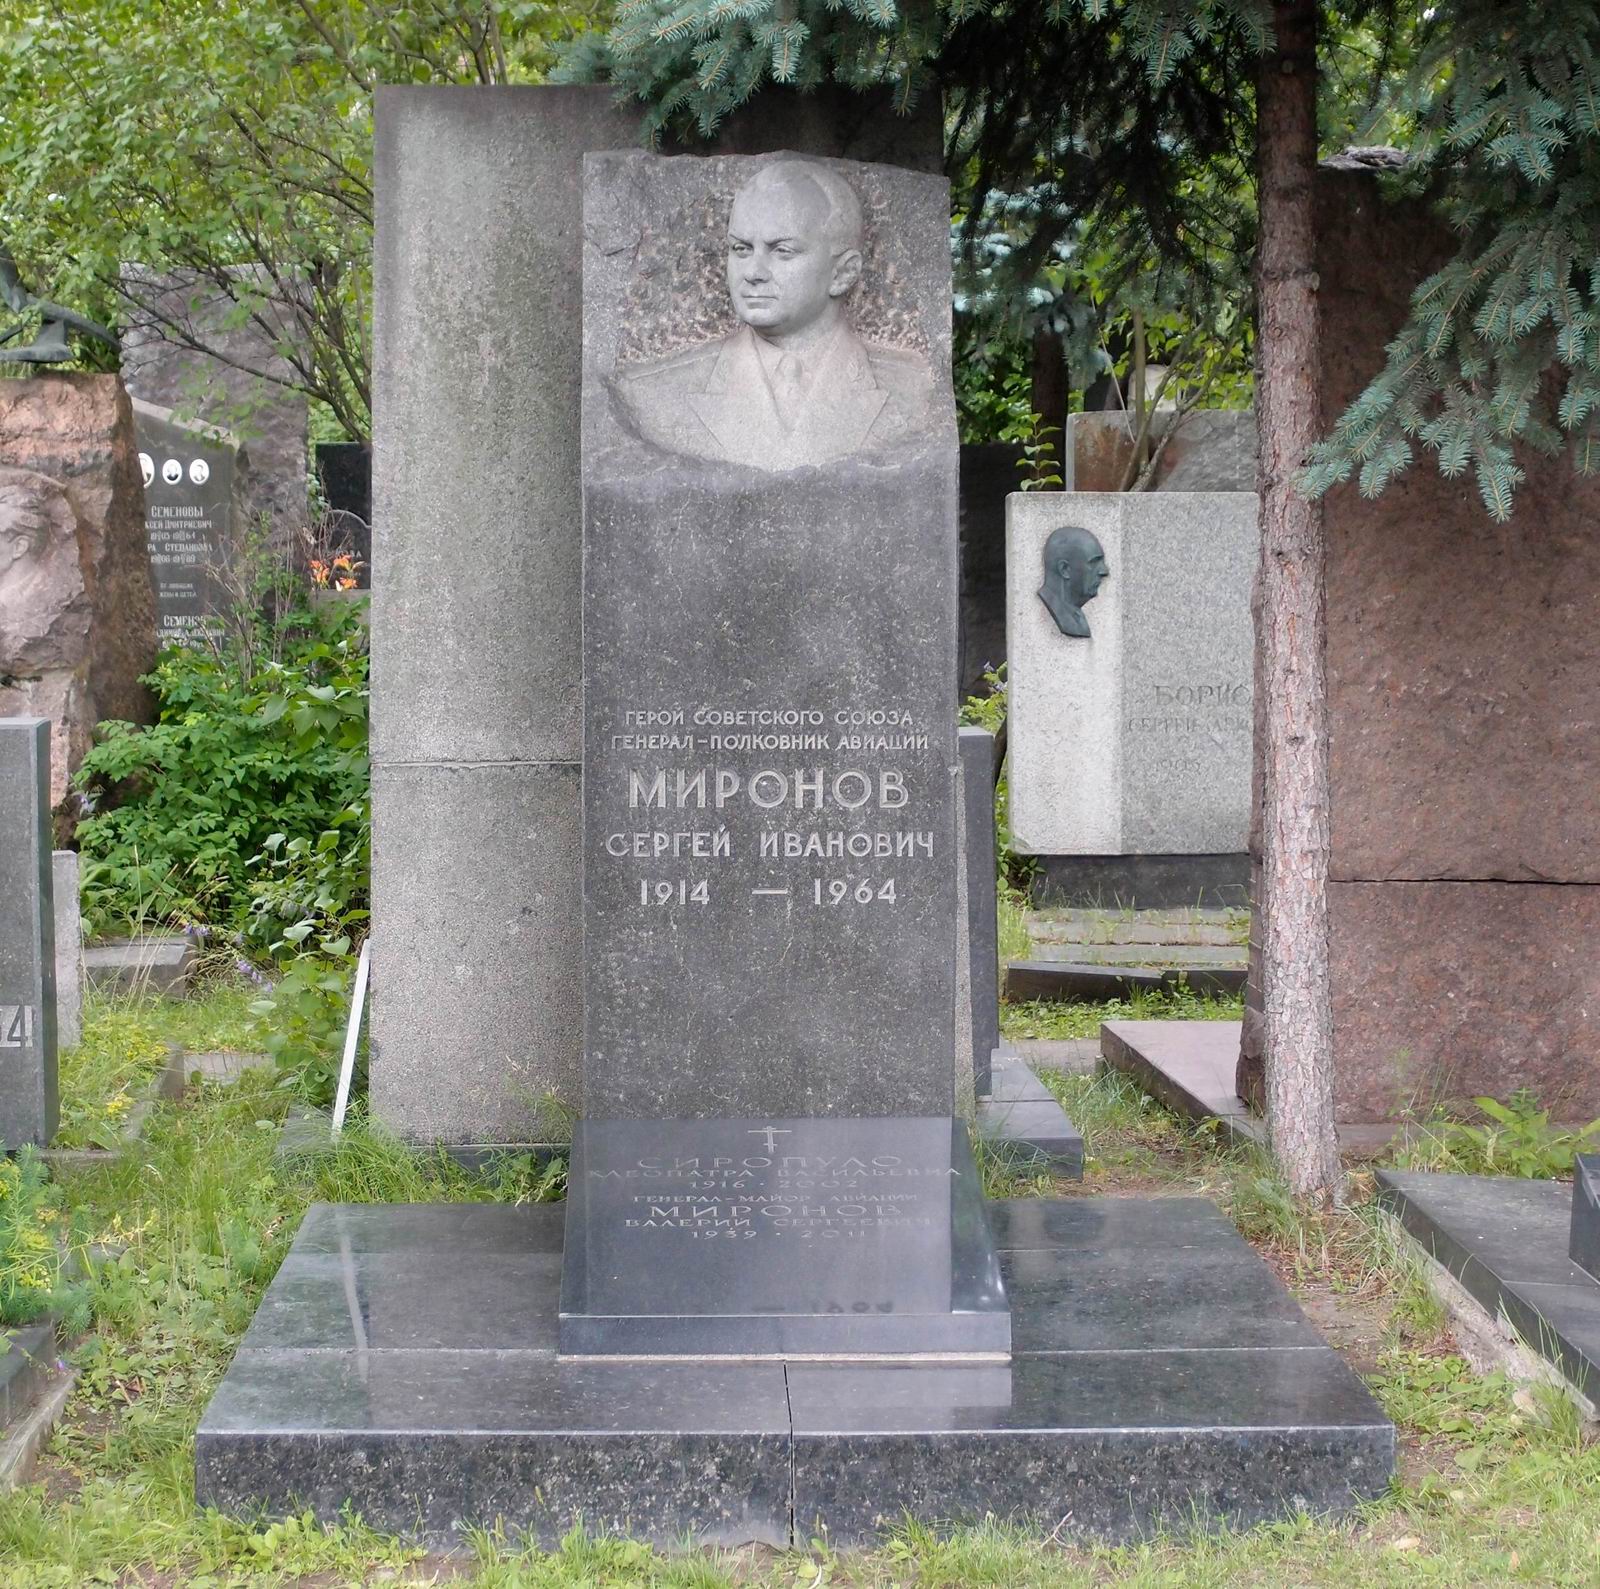 Памятник на могиле Миронова С.И. (1914–1964), на Новодевичьем кладбище (6–9–2). Нажмите левую кнопку мыши, чтобы увидеть фрагмент памятника крупно.